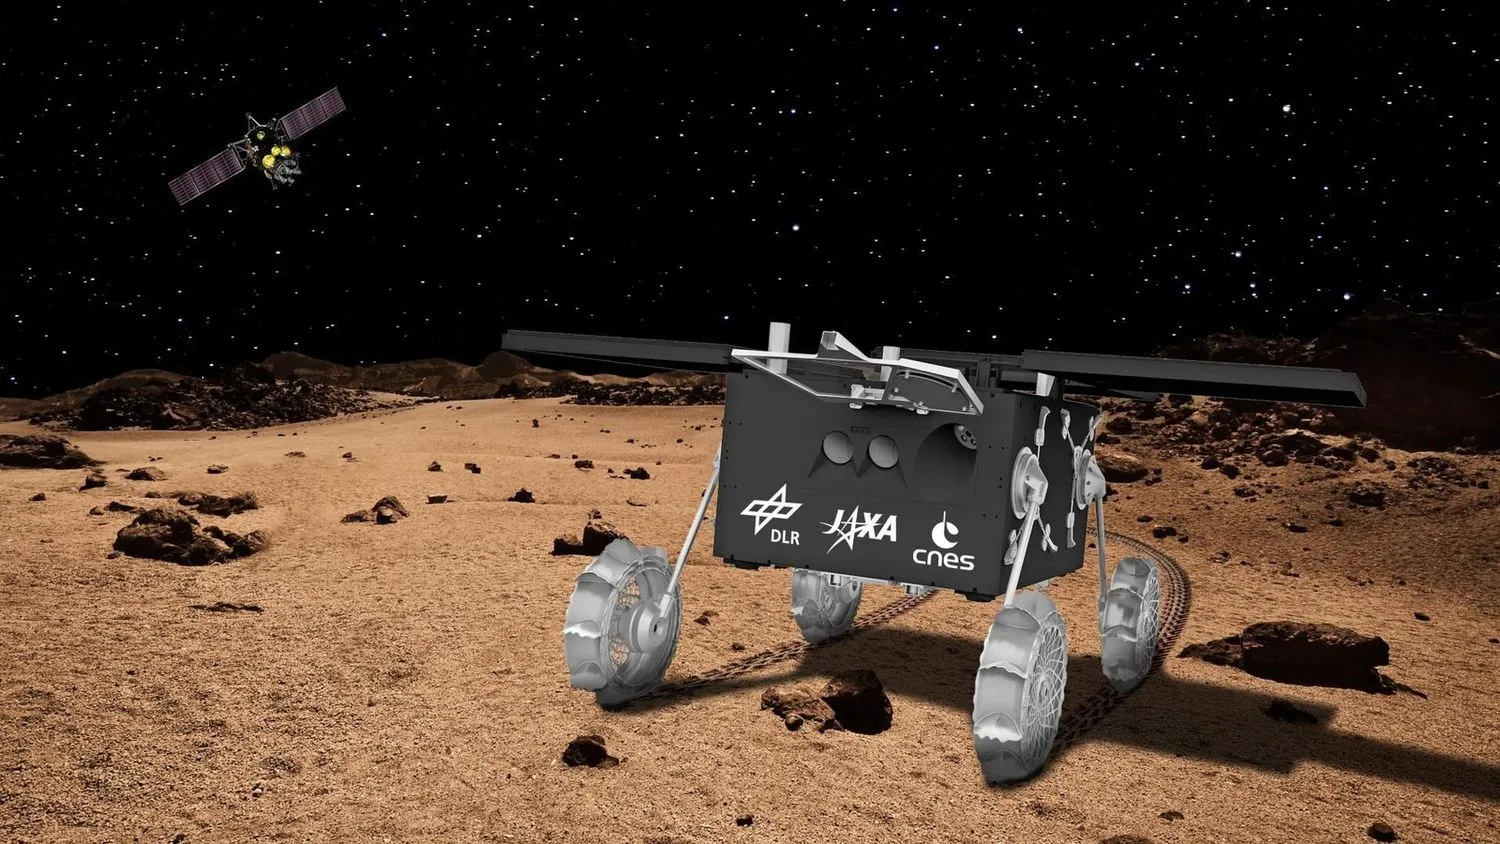 Ein vierrädriger schwarzer Cartoon-Rover steht auf der Oberfläche eines in hellen Brauntönen gehaltenen Planeten. Darüber ist eine Sternennacht zu sehen, mit einem Satelliten oben links.